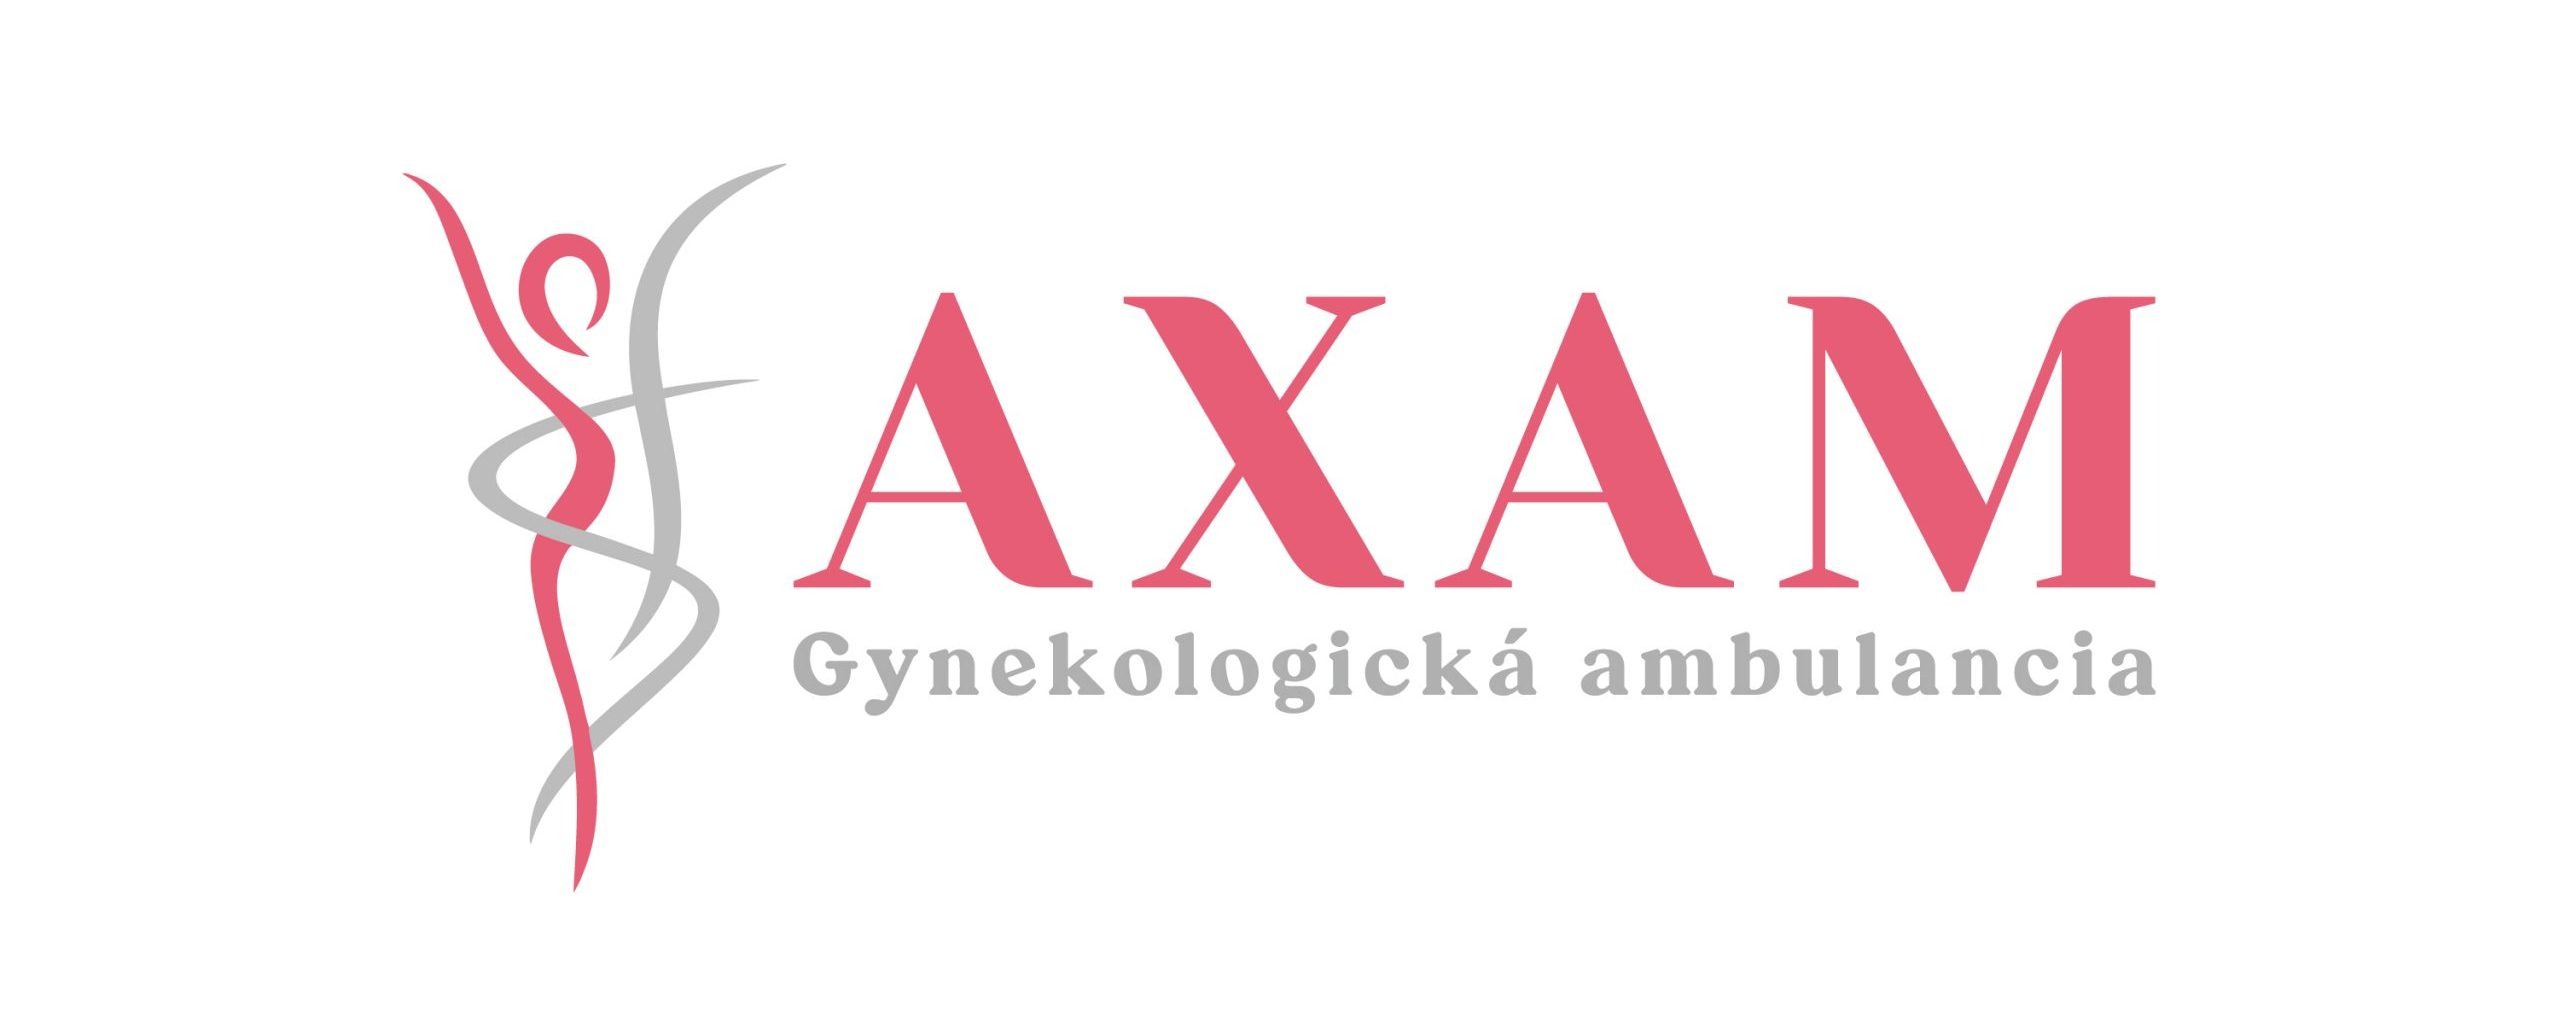 Gynekologická ambulancia Petržalka